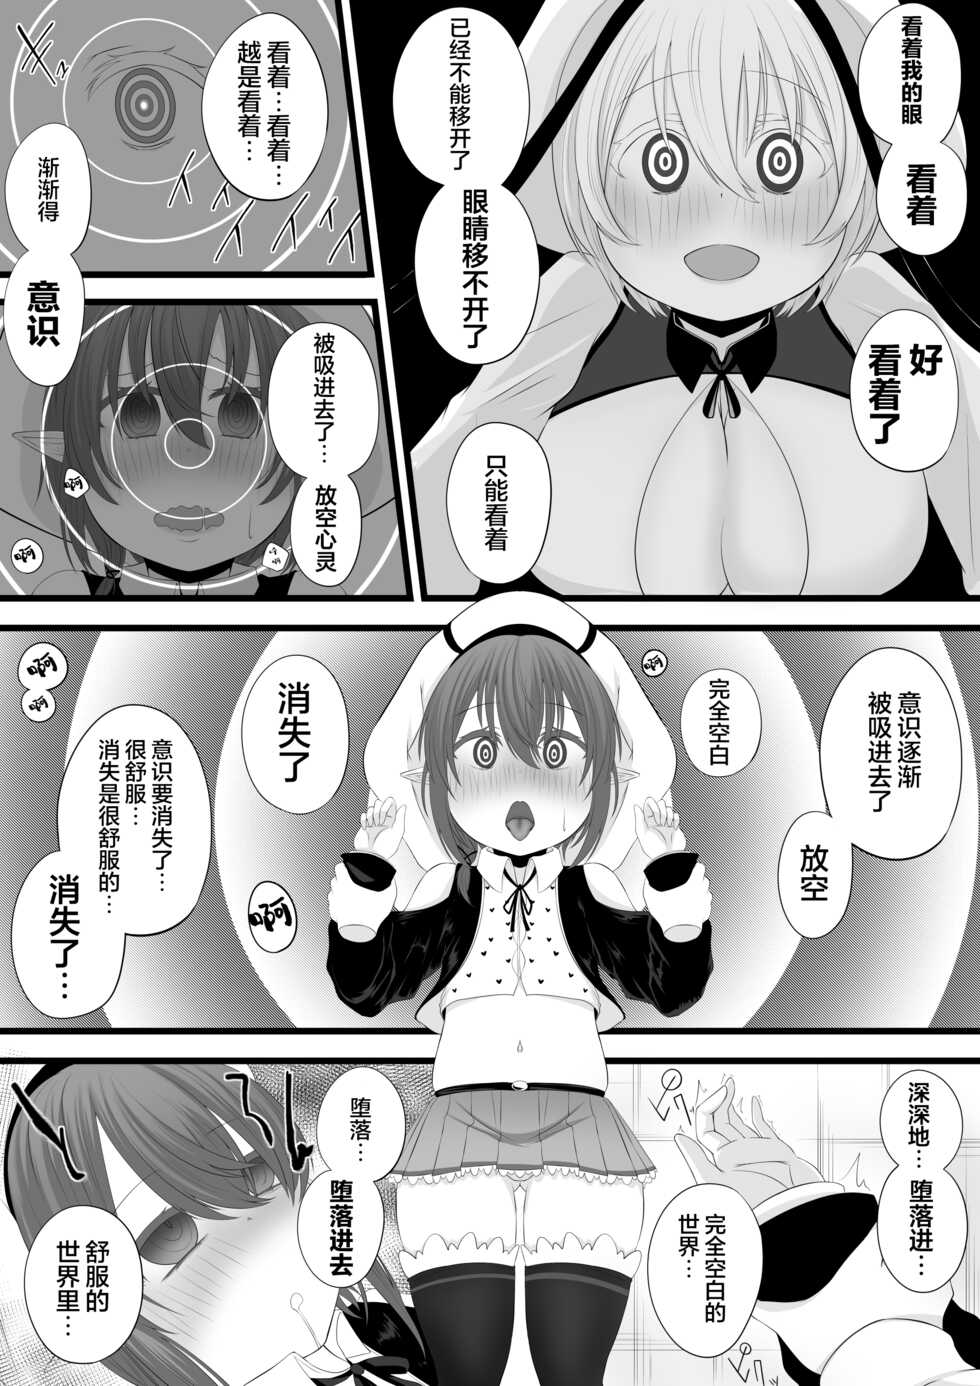 [みいら] Skeb irai yo sono ko sennou rensa o ti manga [龍蓮个人汉化] - Page 5